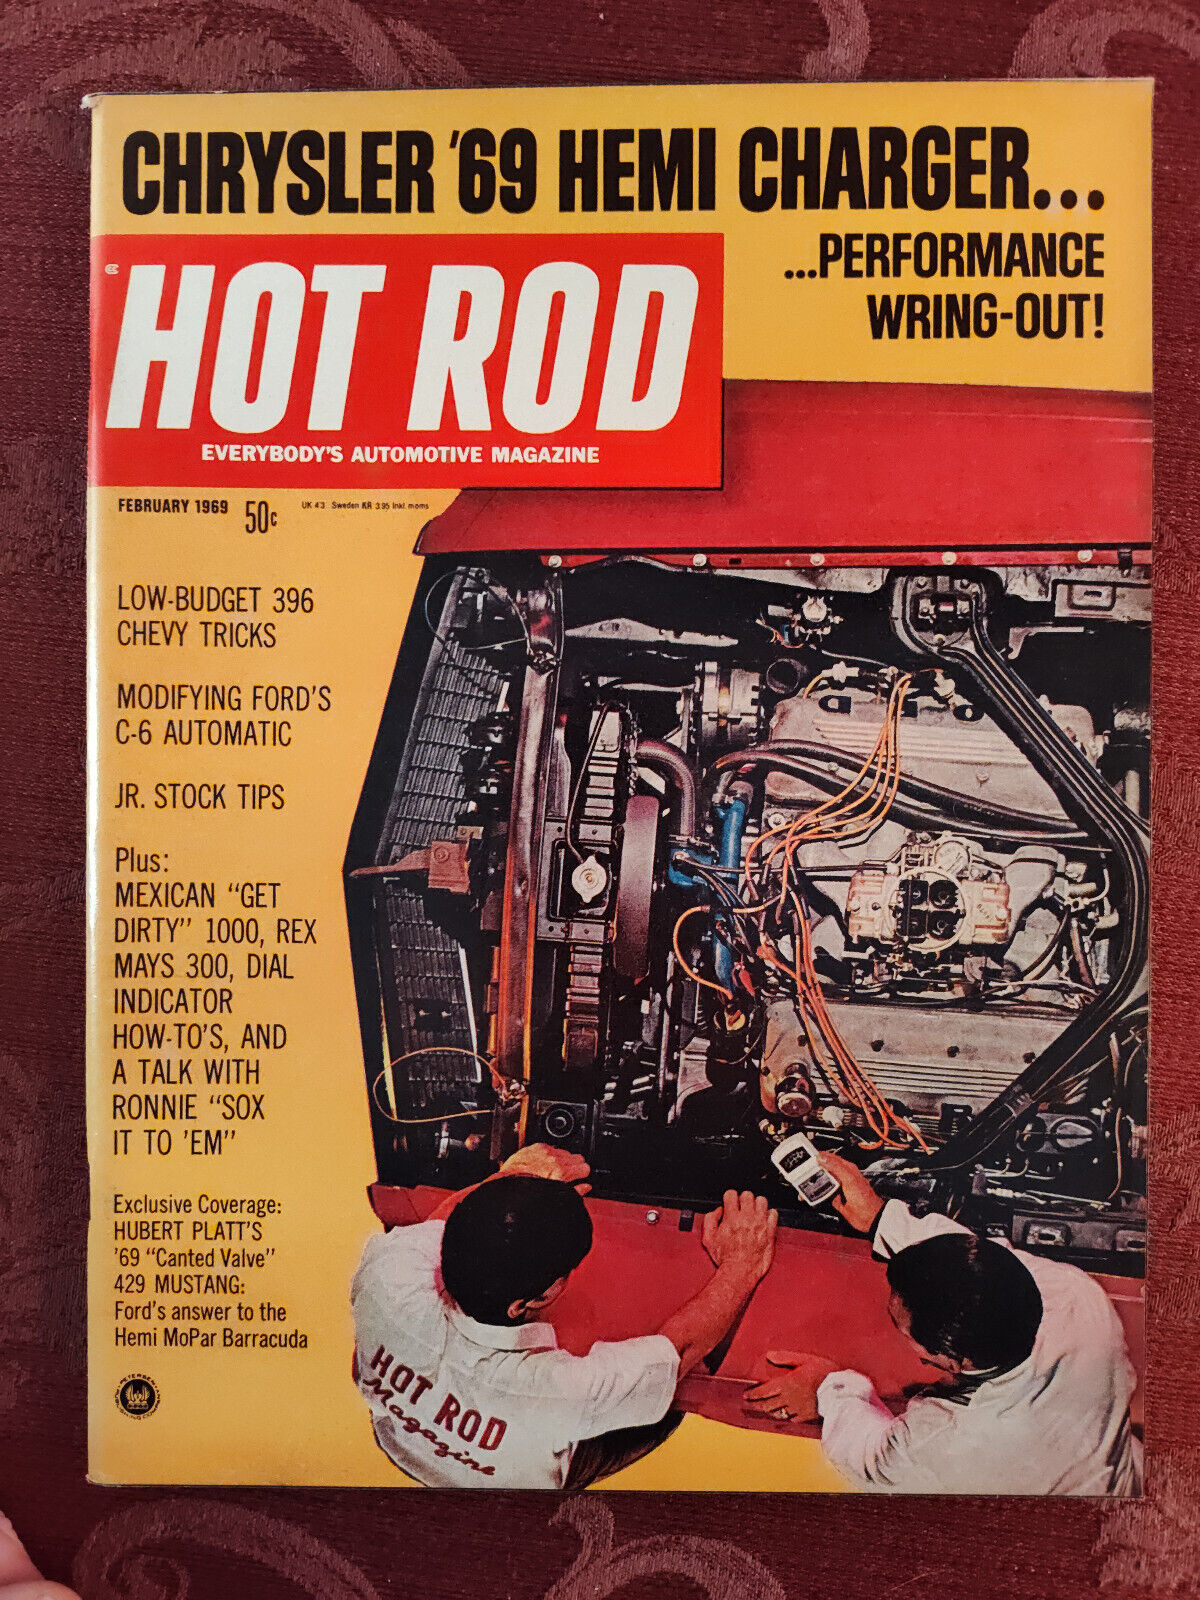 Rare HOT ROD Magazine February 1969 Chrysler Hemi Charger 429 Ford Mustang